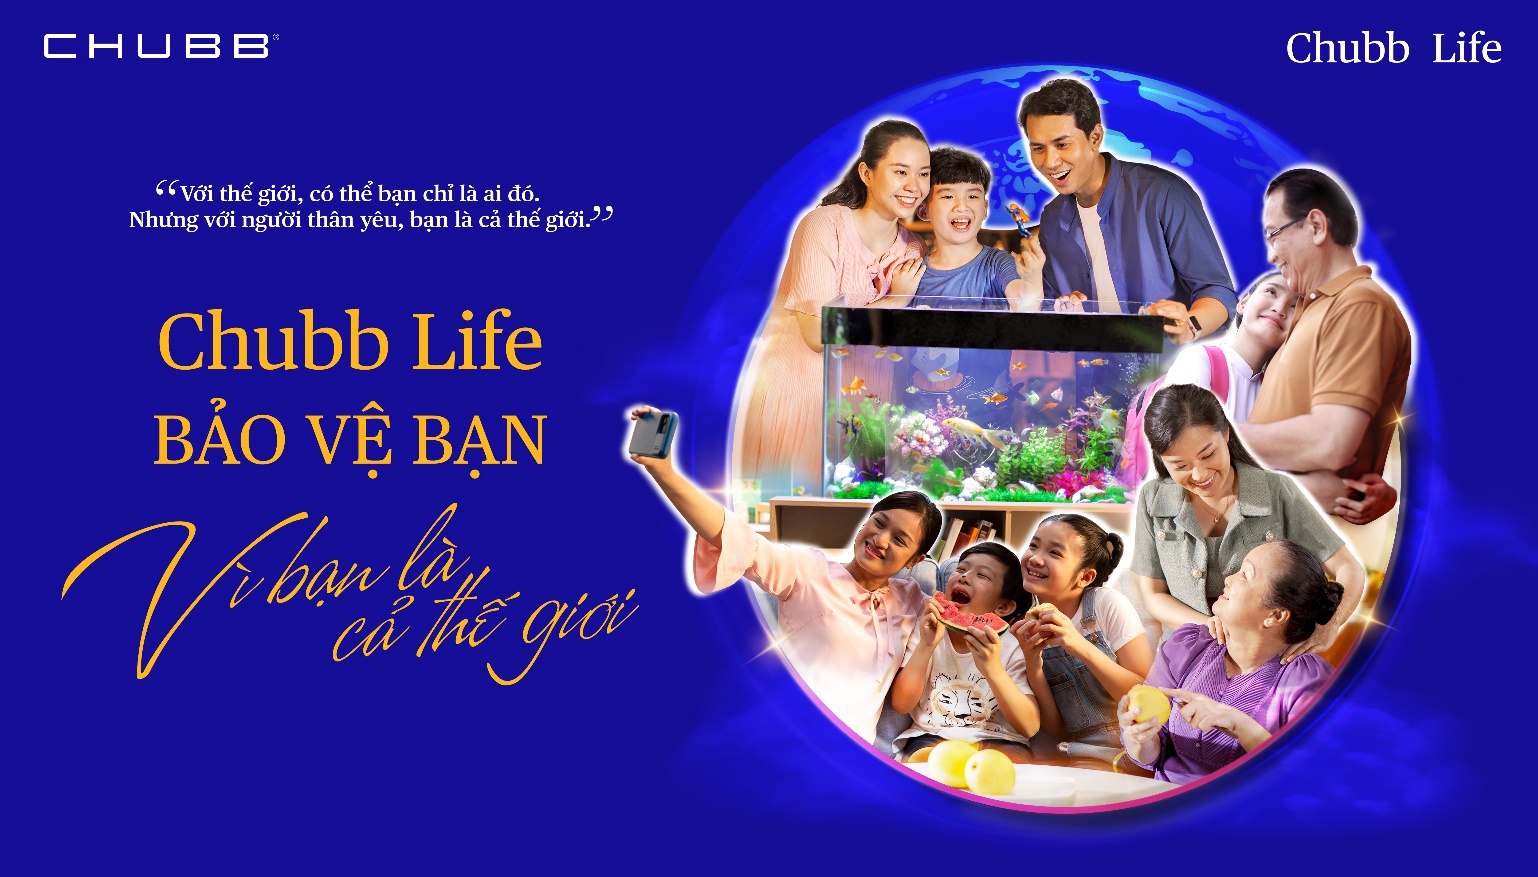 Thông điệp về giá trị riêng của bản thân được Chubb Life Việt Nam truyền tải đầy cảm xúc qua chiến dịch truyền thông “Vì bạn là cả thế giới” - Ảnh 1.